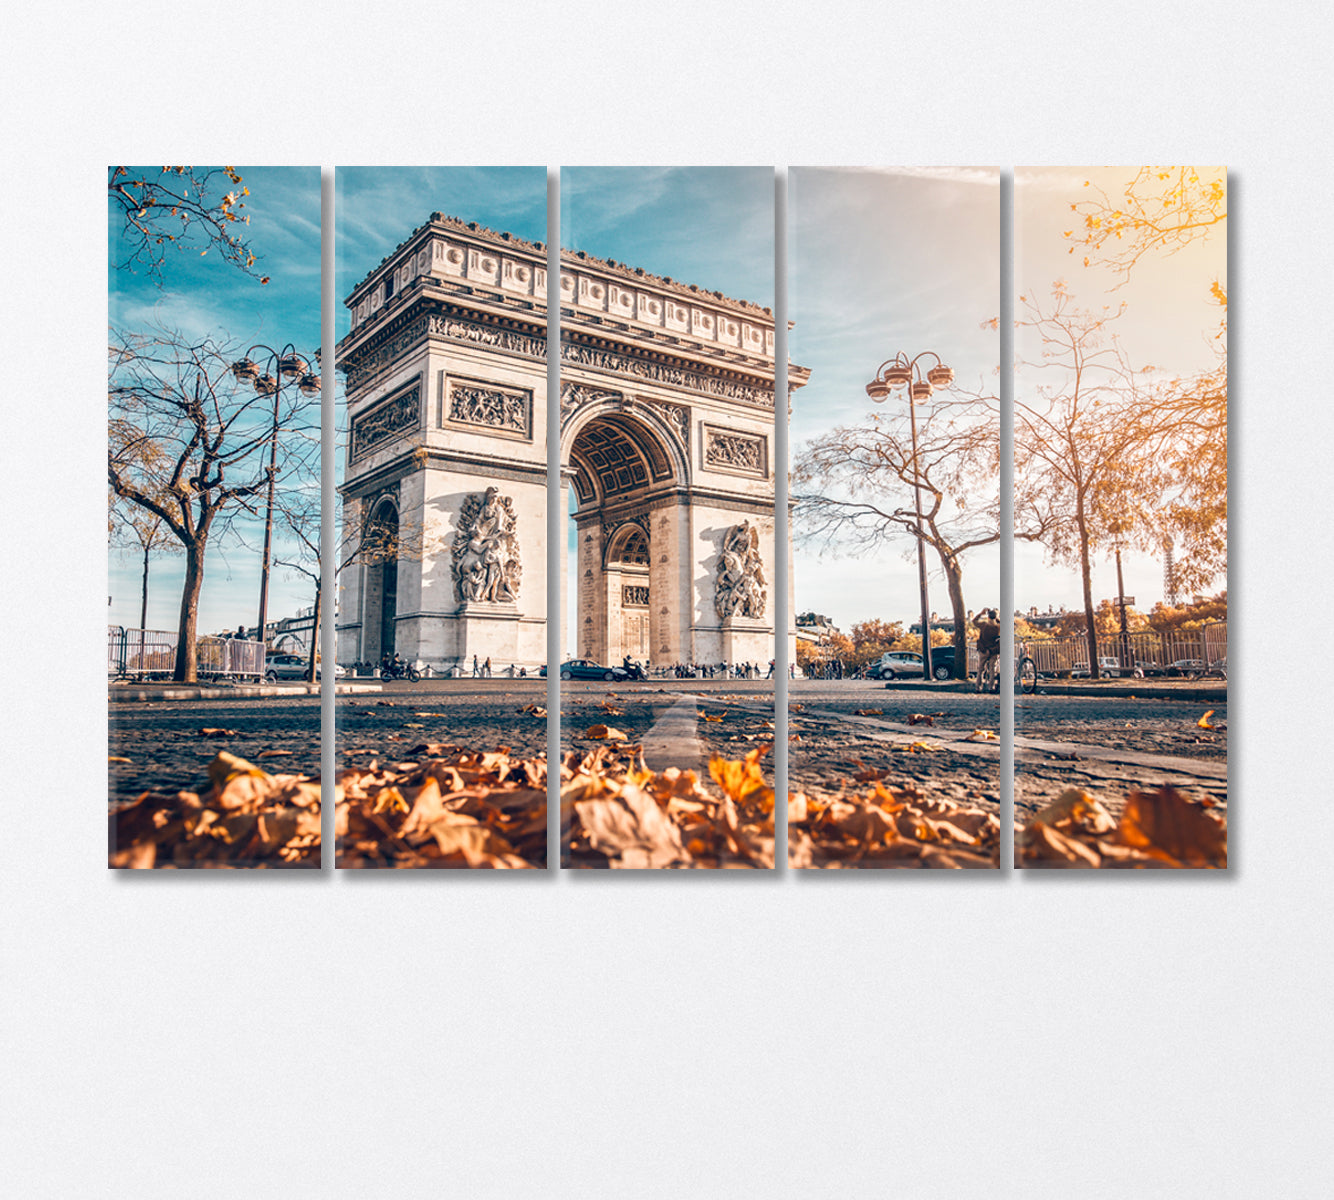 Arc De Triomphe Golden Autumn in Paris Canvas Print-Canvas Print-CetArt-5 Panels-36x24 inches-CetArt